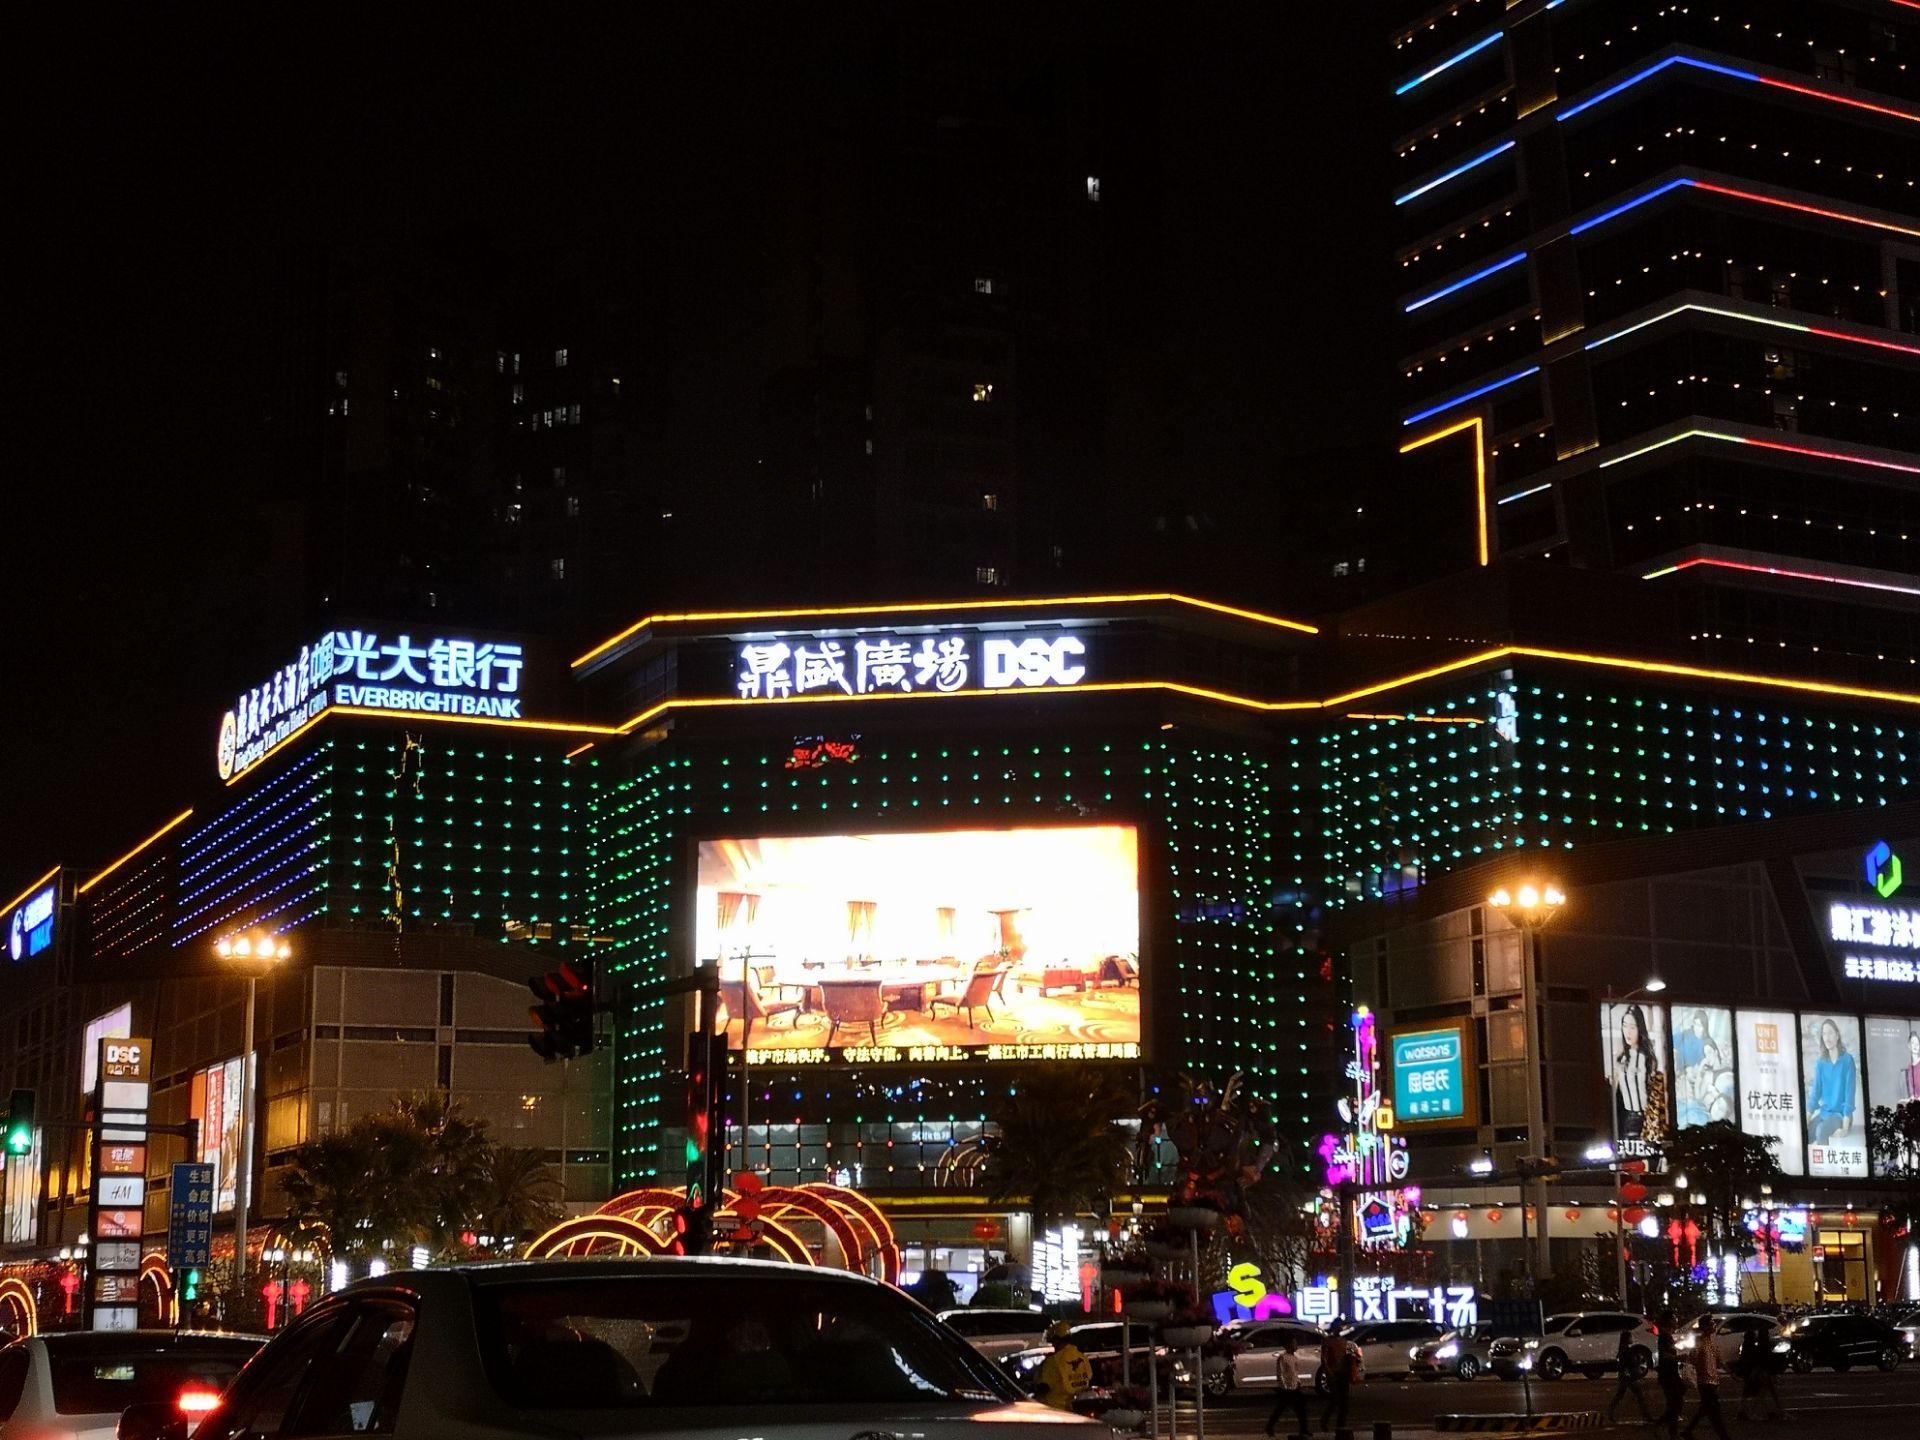 【携程攻略】湛江鼎盛广场购物,本来以为万达广场才是湛江最多人去的